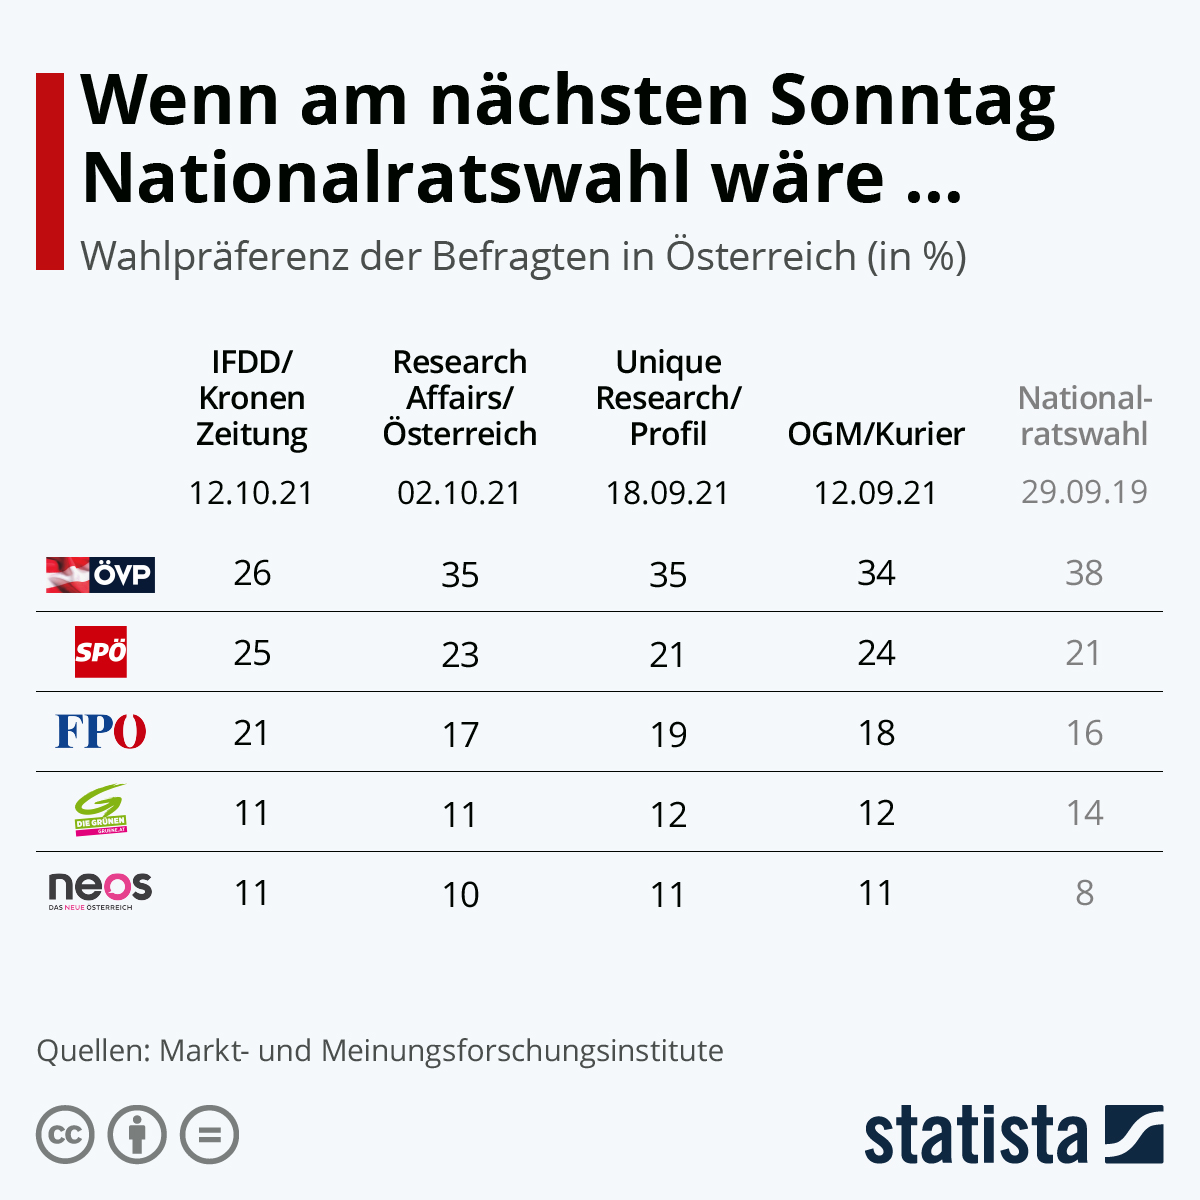 Momentan steht die ÖVP bei etwa 26 Prozent, nur einen Prozentpunkt vor der SPÖ - so schlecht war das Umfrageergebnis seit Jahren nicht mehr. Das sorgt für eine große Wählerwanderung zur FPÖ, die mit 21 Prozent rund vier Prozentpunkte gegenüber der Vorwoche gewinnt. Grüne und Neos stehen weiterhin bei etwa elf Prozent. Für die Grünen ist das Ergebnis wenig zufriedenstellend – sie liegen rund drei Prozentpunkte unter dem Abschneiden bei der letzten Nationalratswahl. Die Neos hingegen verbessern sich im Vergleich zu vor drei Jahren um gante vier bis fünf Punkte.